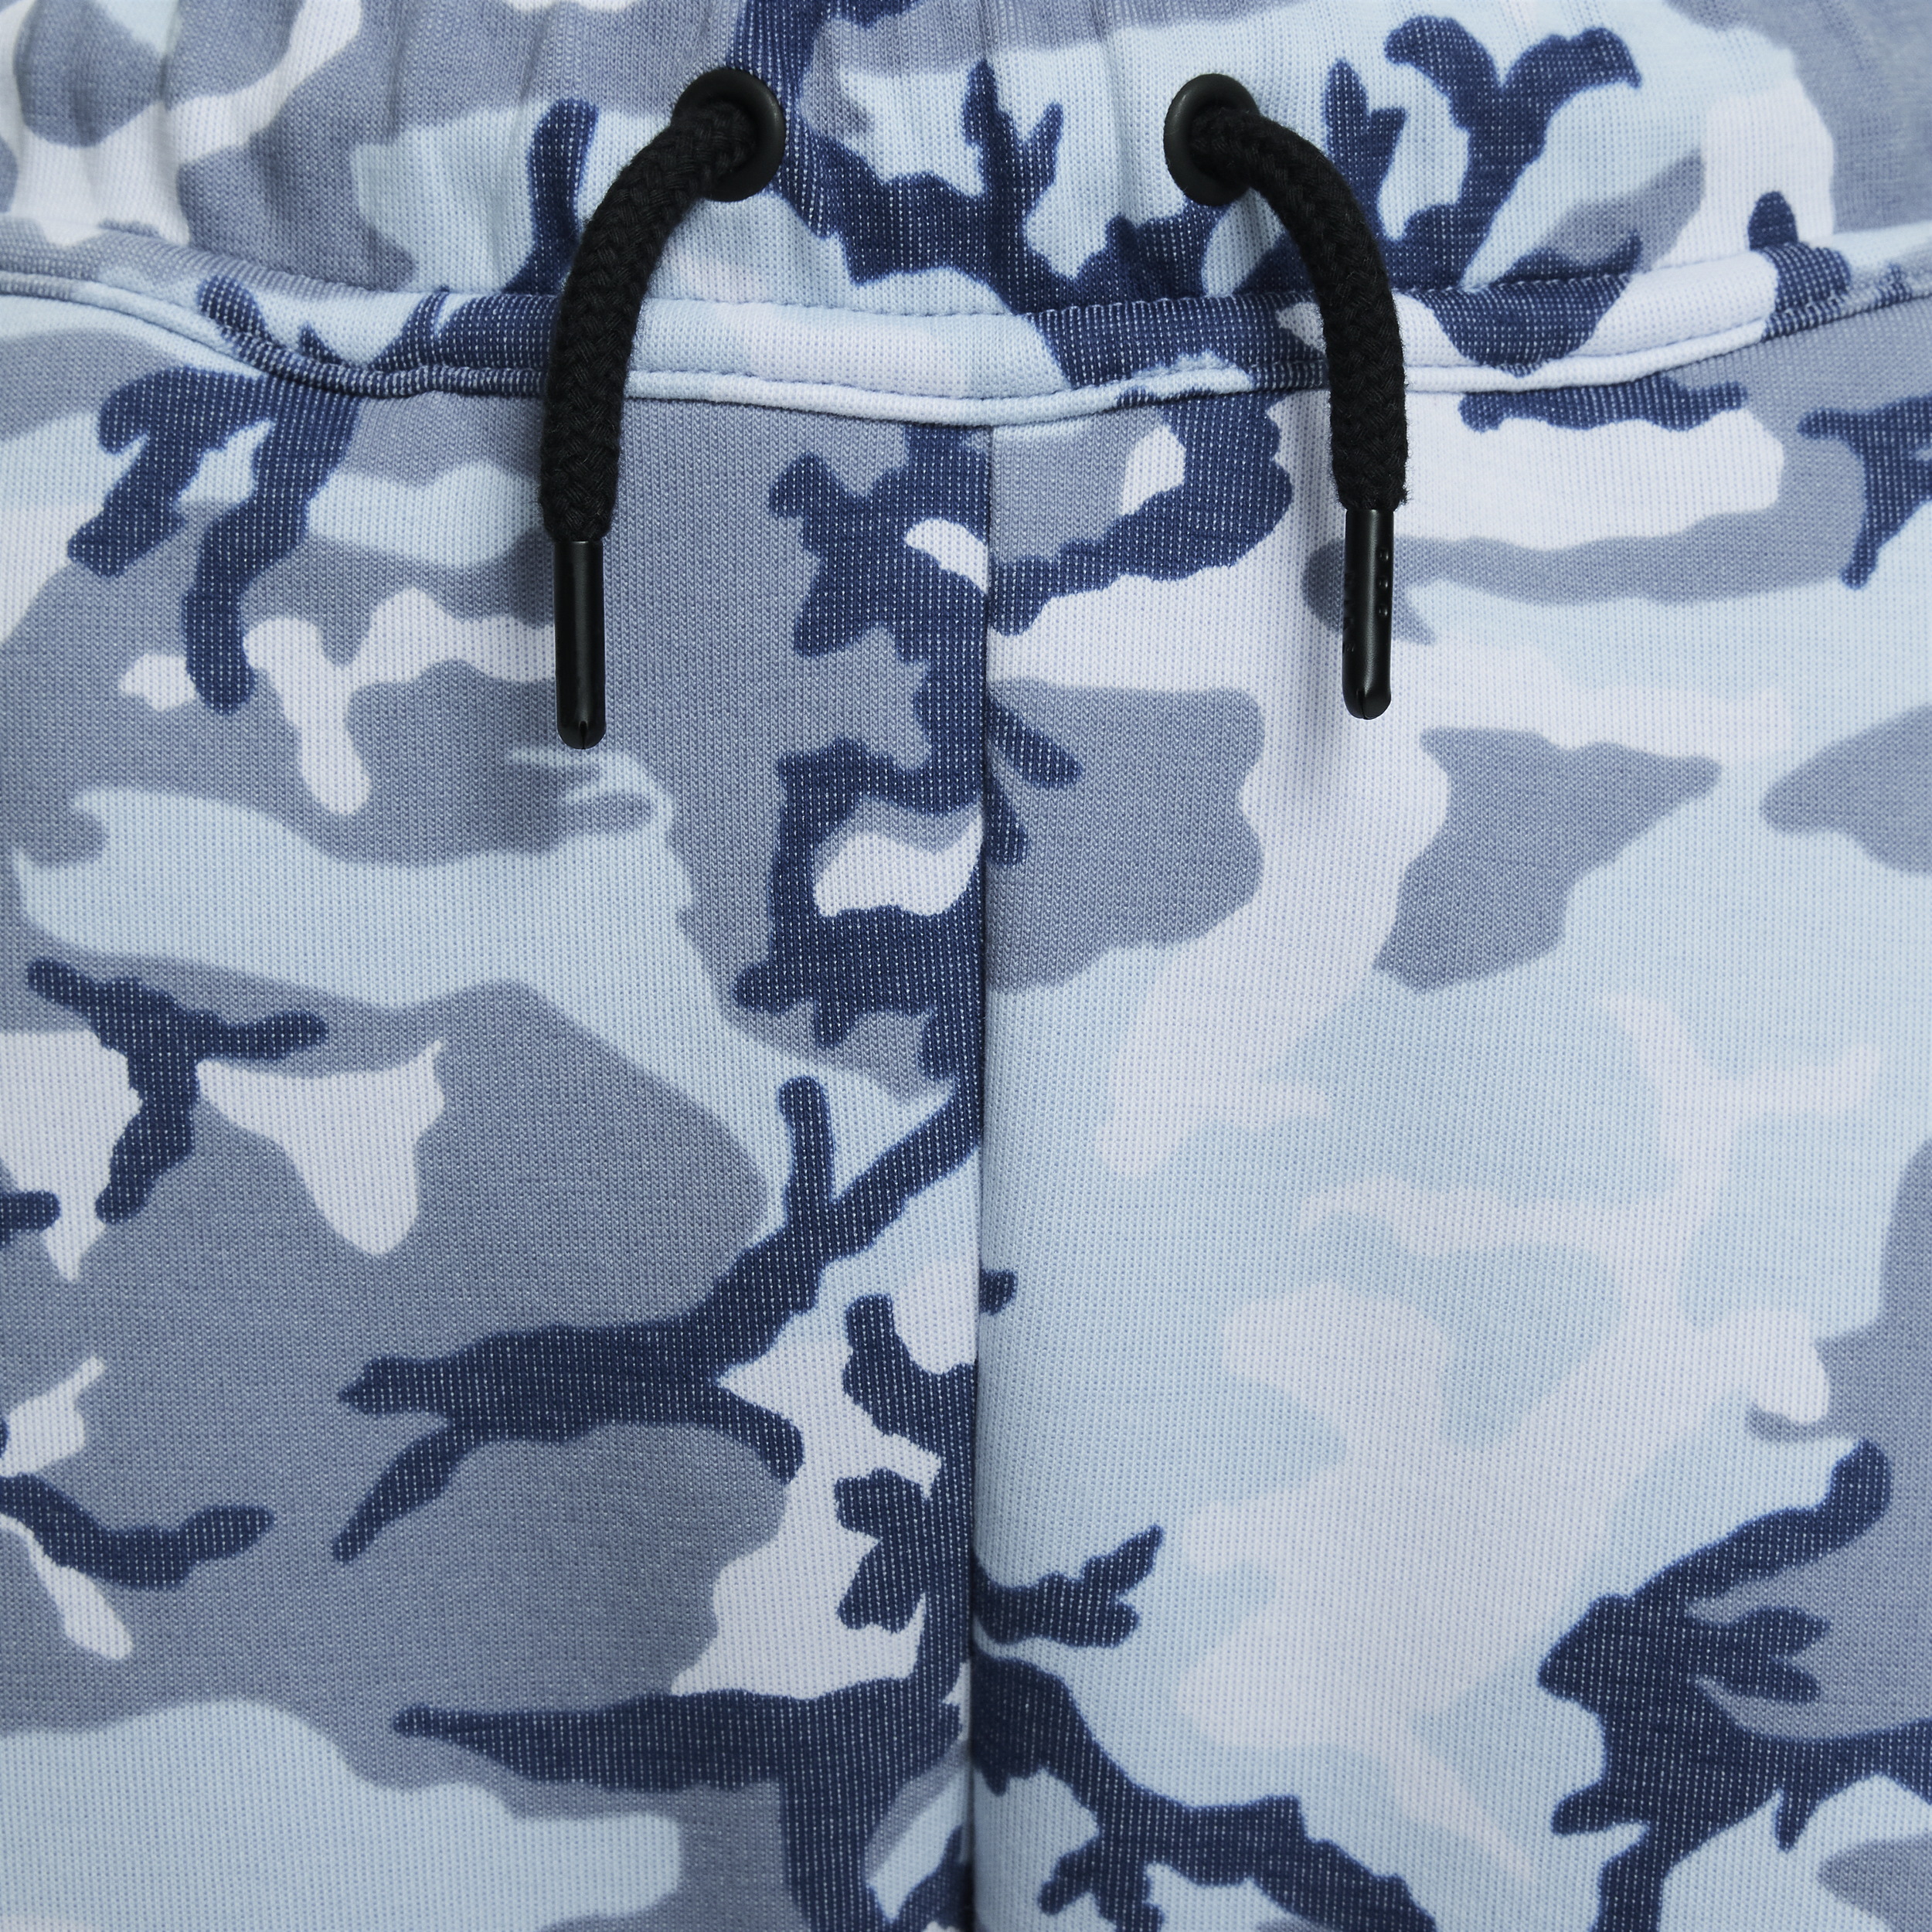 Nike Sportswear Tech Fleece joggingbroek met camouflageprint voor jongens Blauw